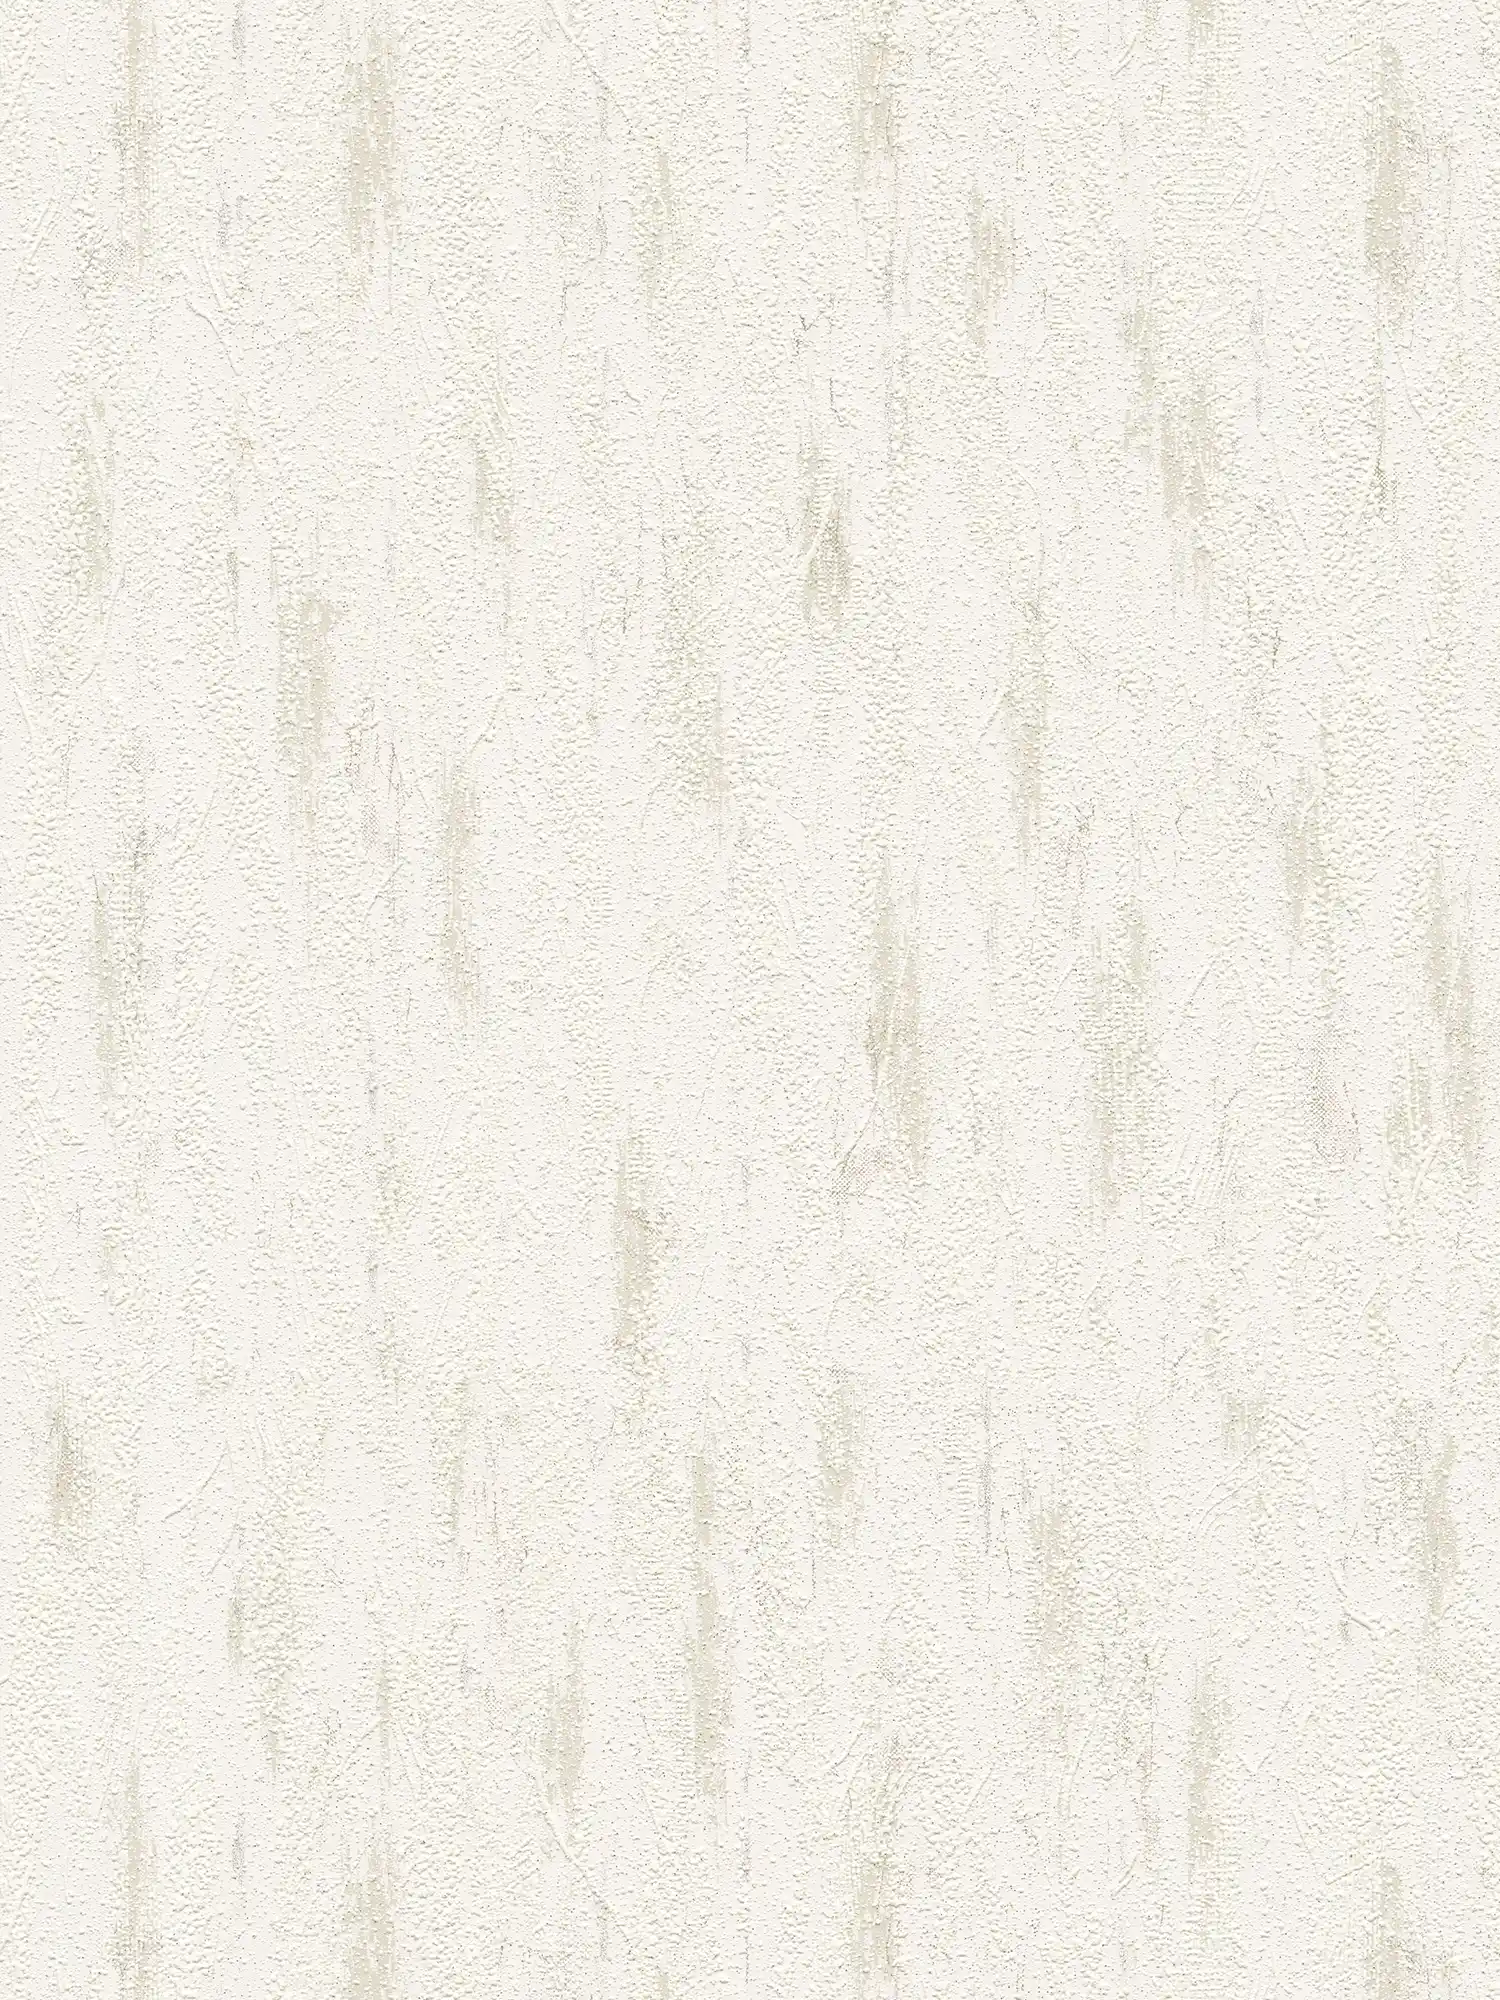 Gipsoptisch behang met structuurdecor & kleurschakeringen - grijs, crème
